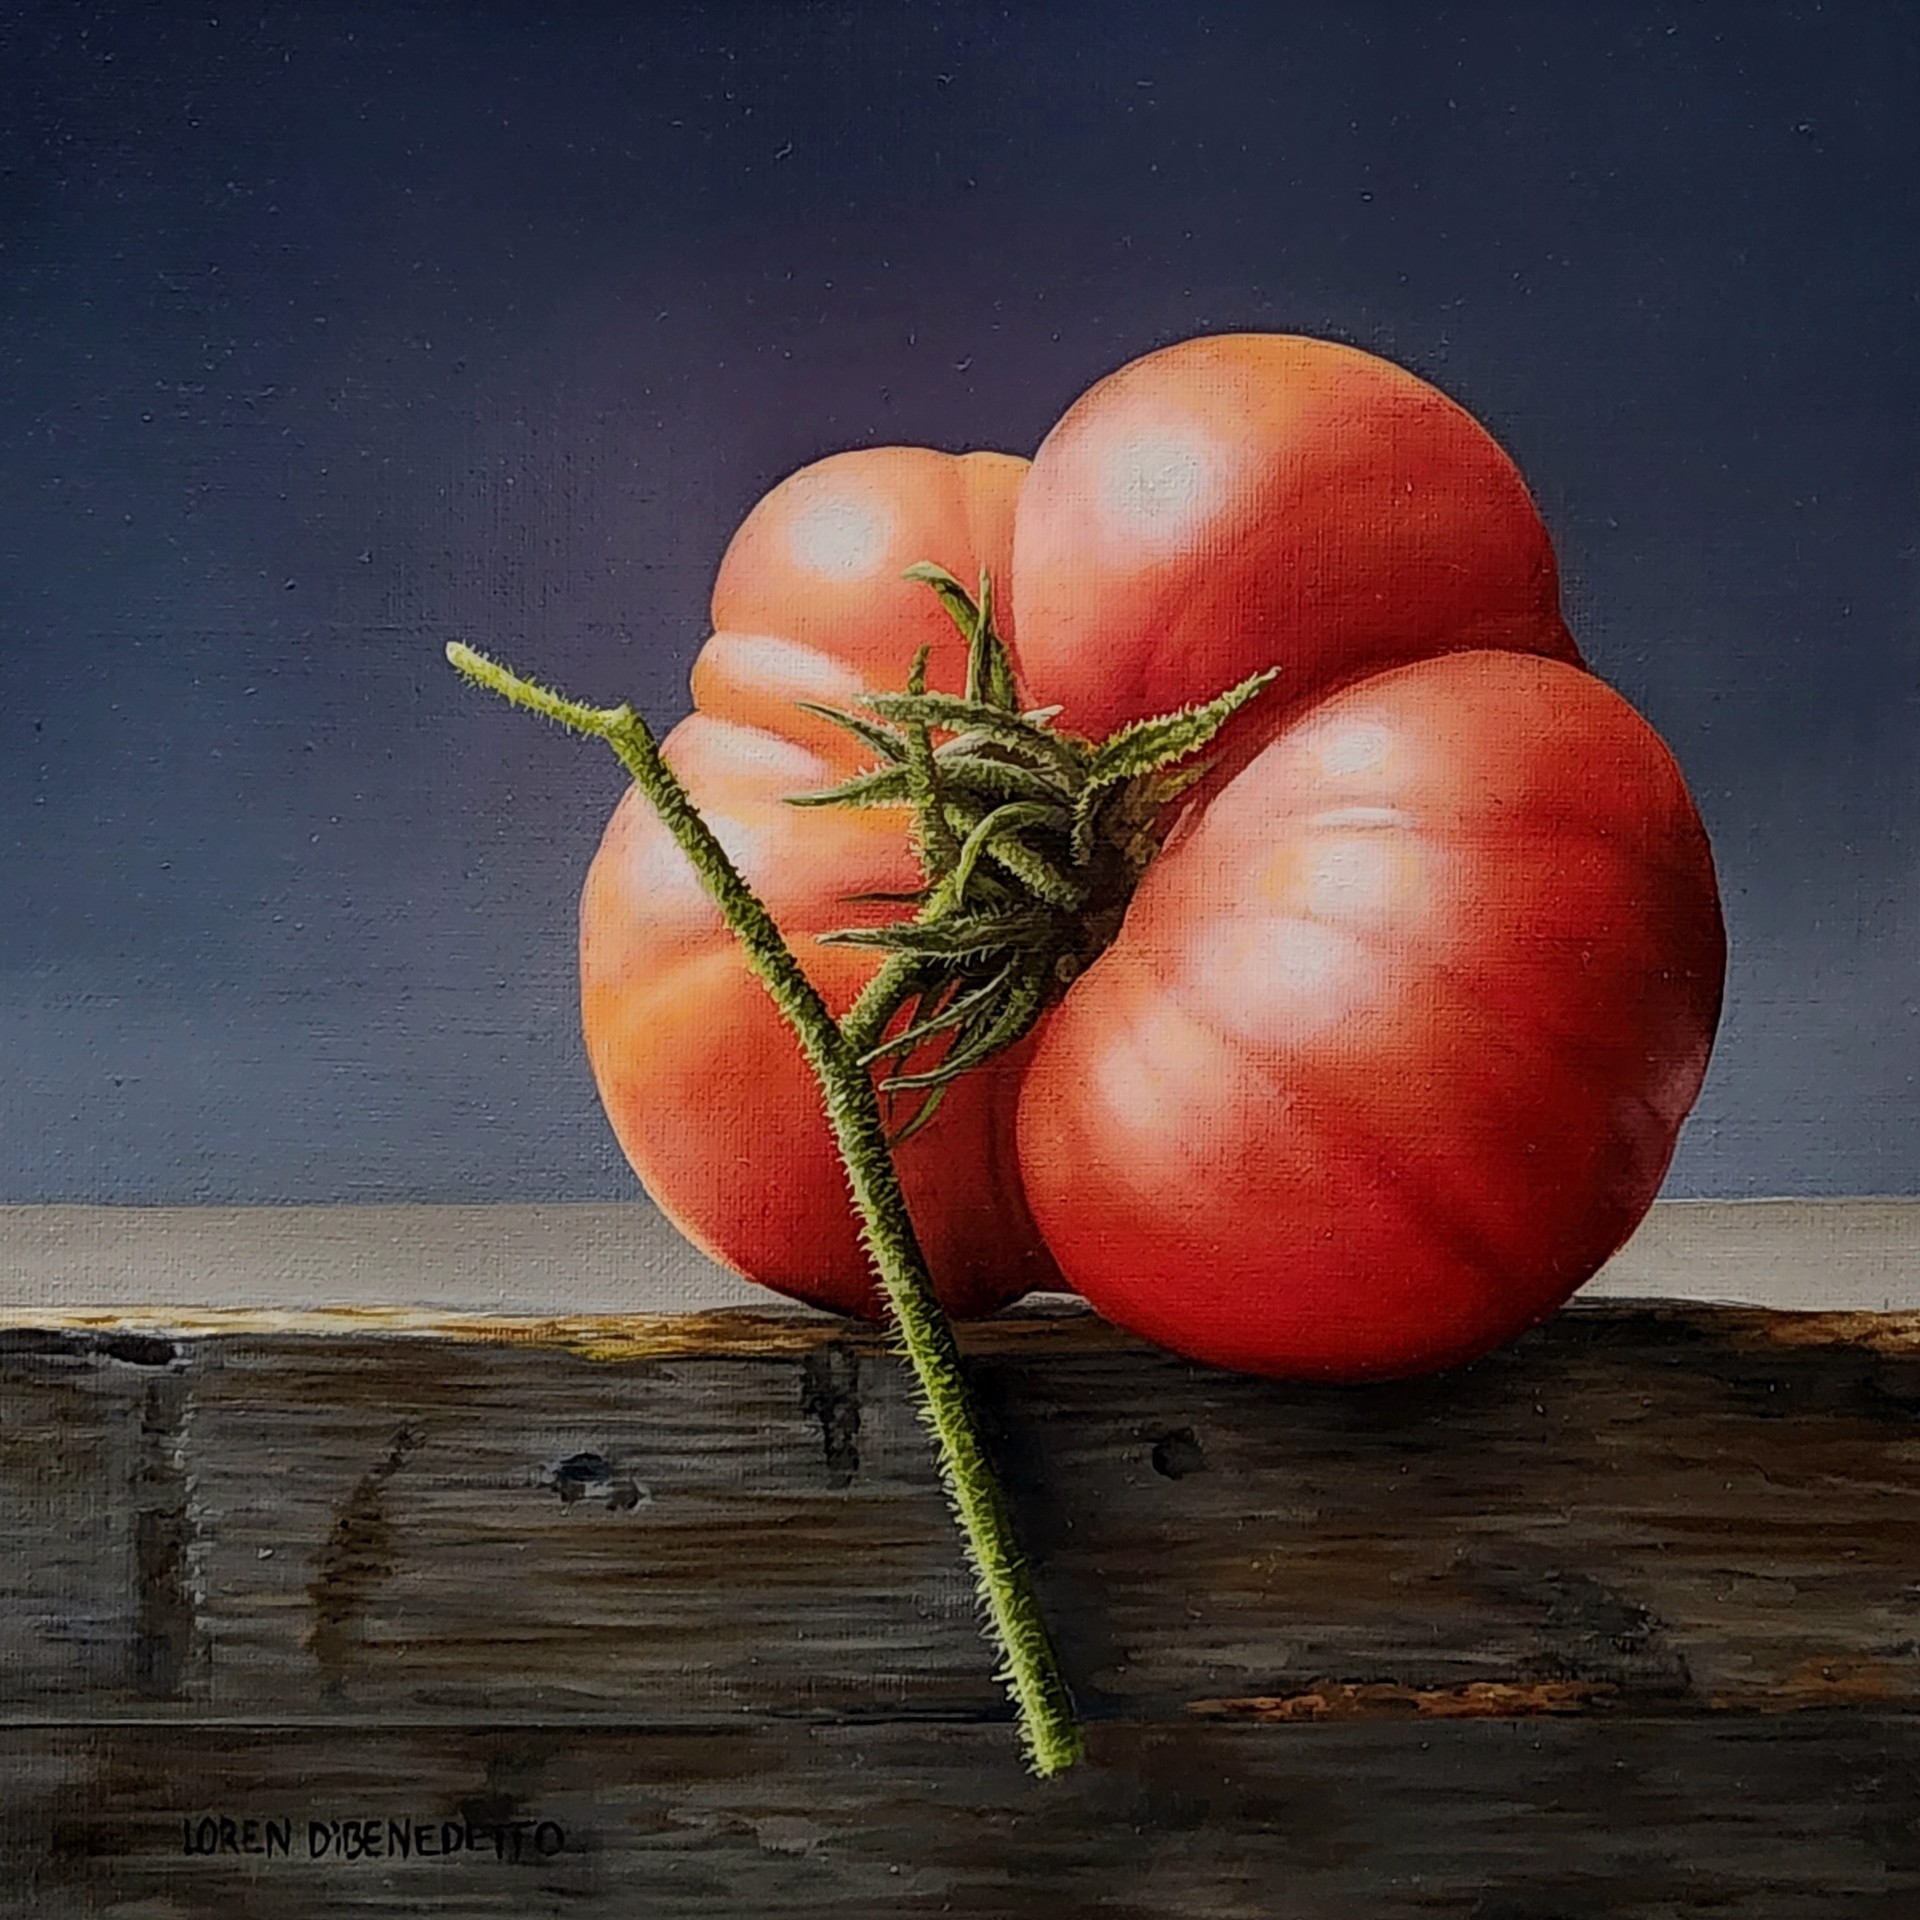 Lone Tomato by Loren DiBenedetto